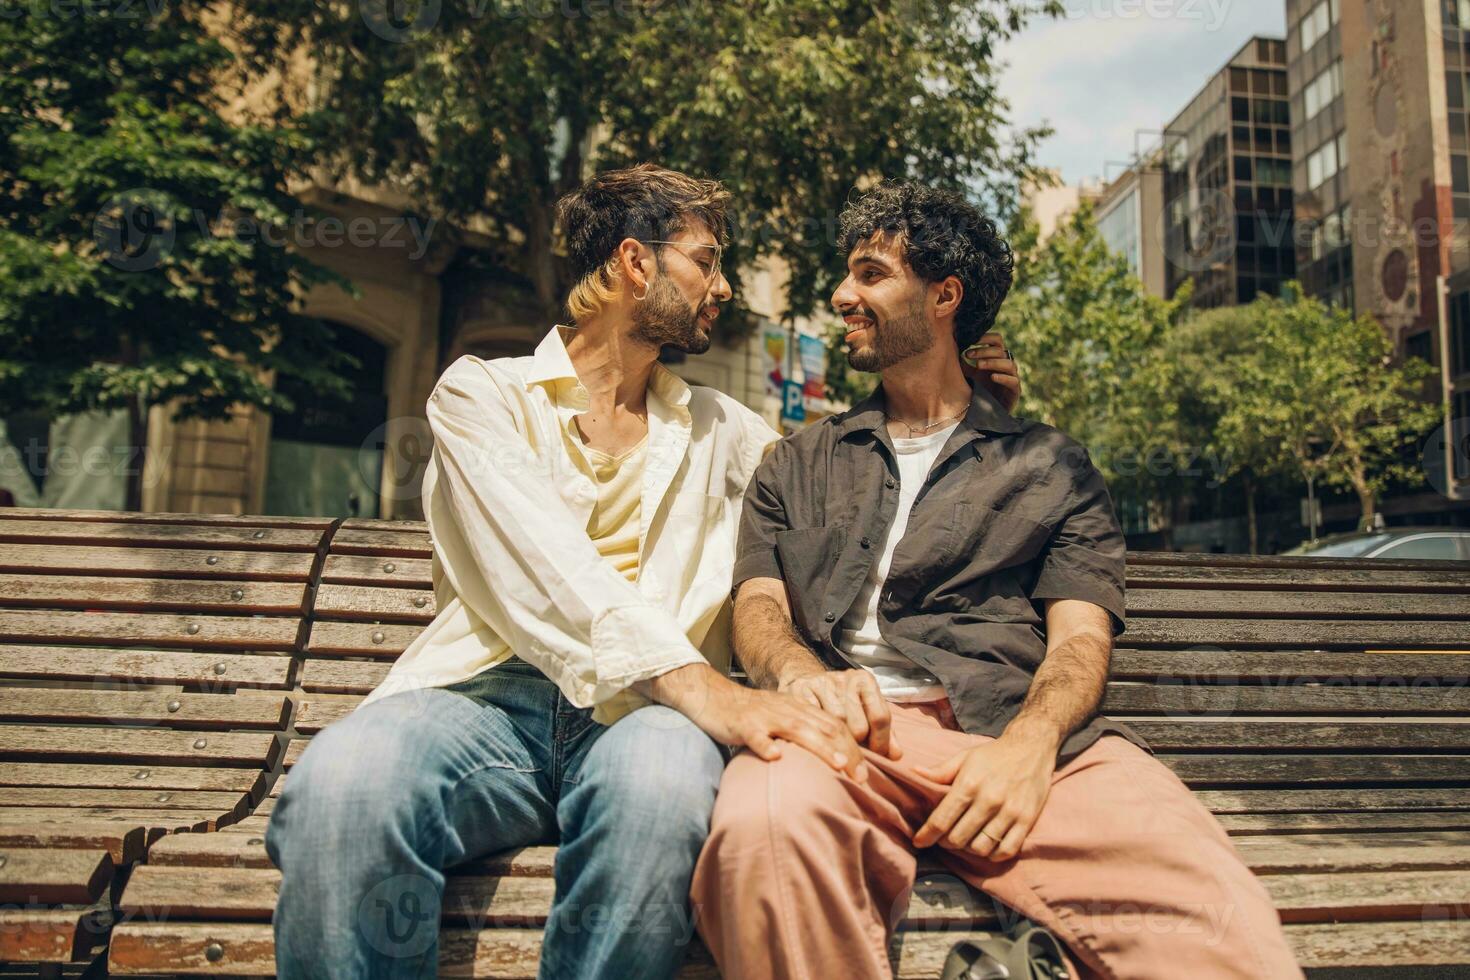 män Sammanträde på en bänk i de stad kissing ang kramar varje Övrig foto